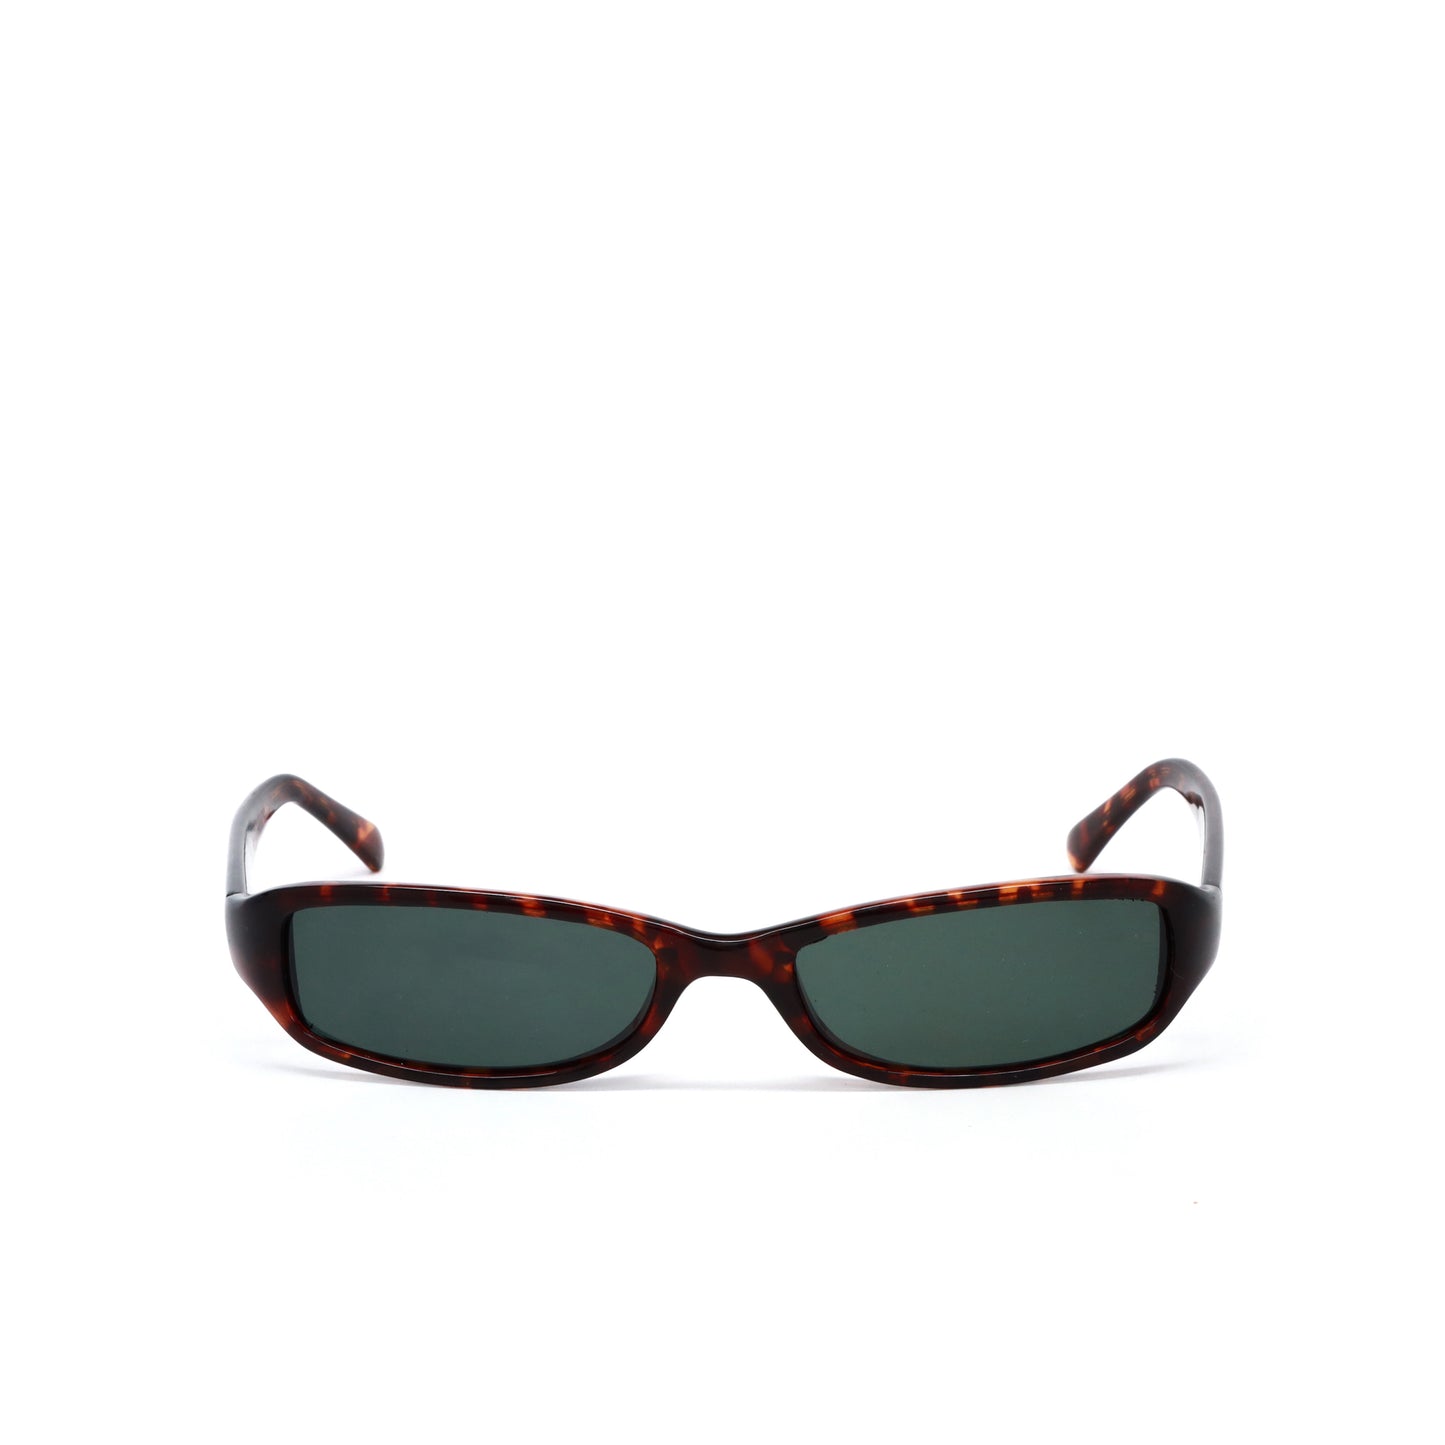 Vintage Small Size Jeanne Genuine Pastel Sunglasses - Tortoise